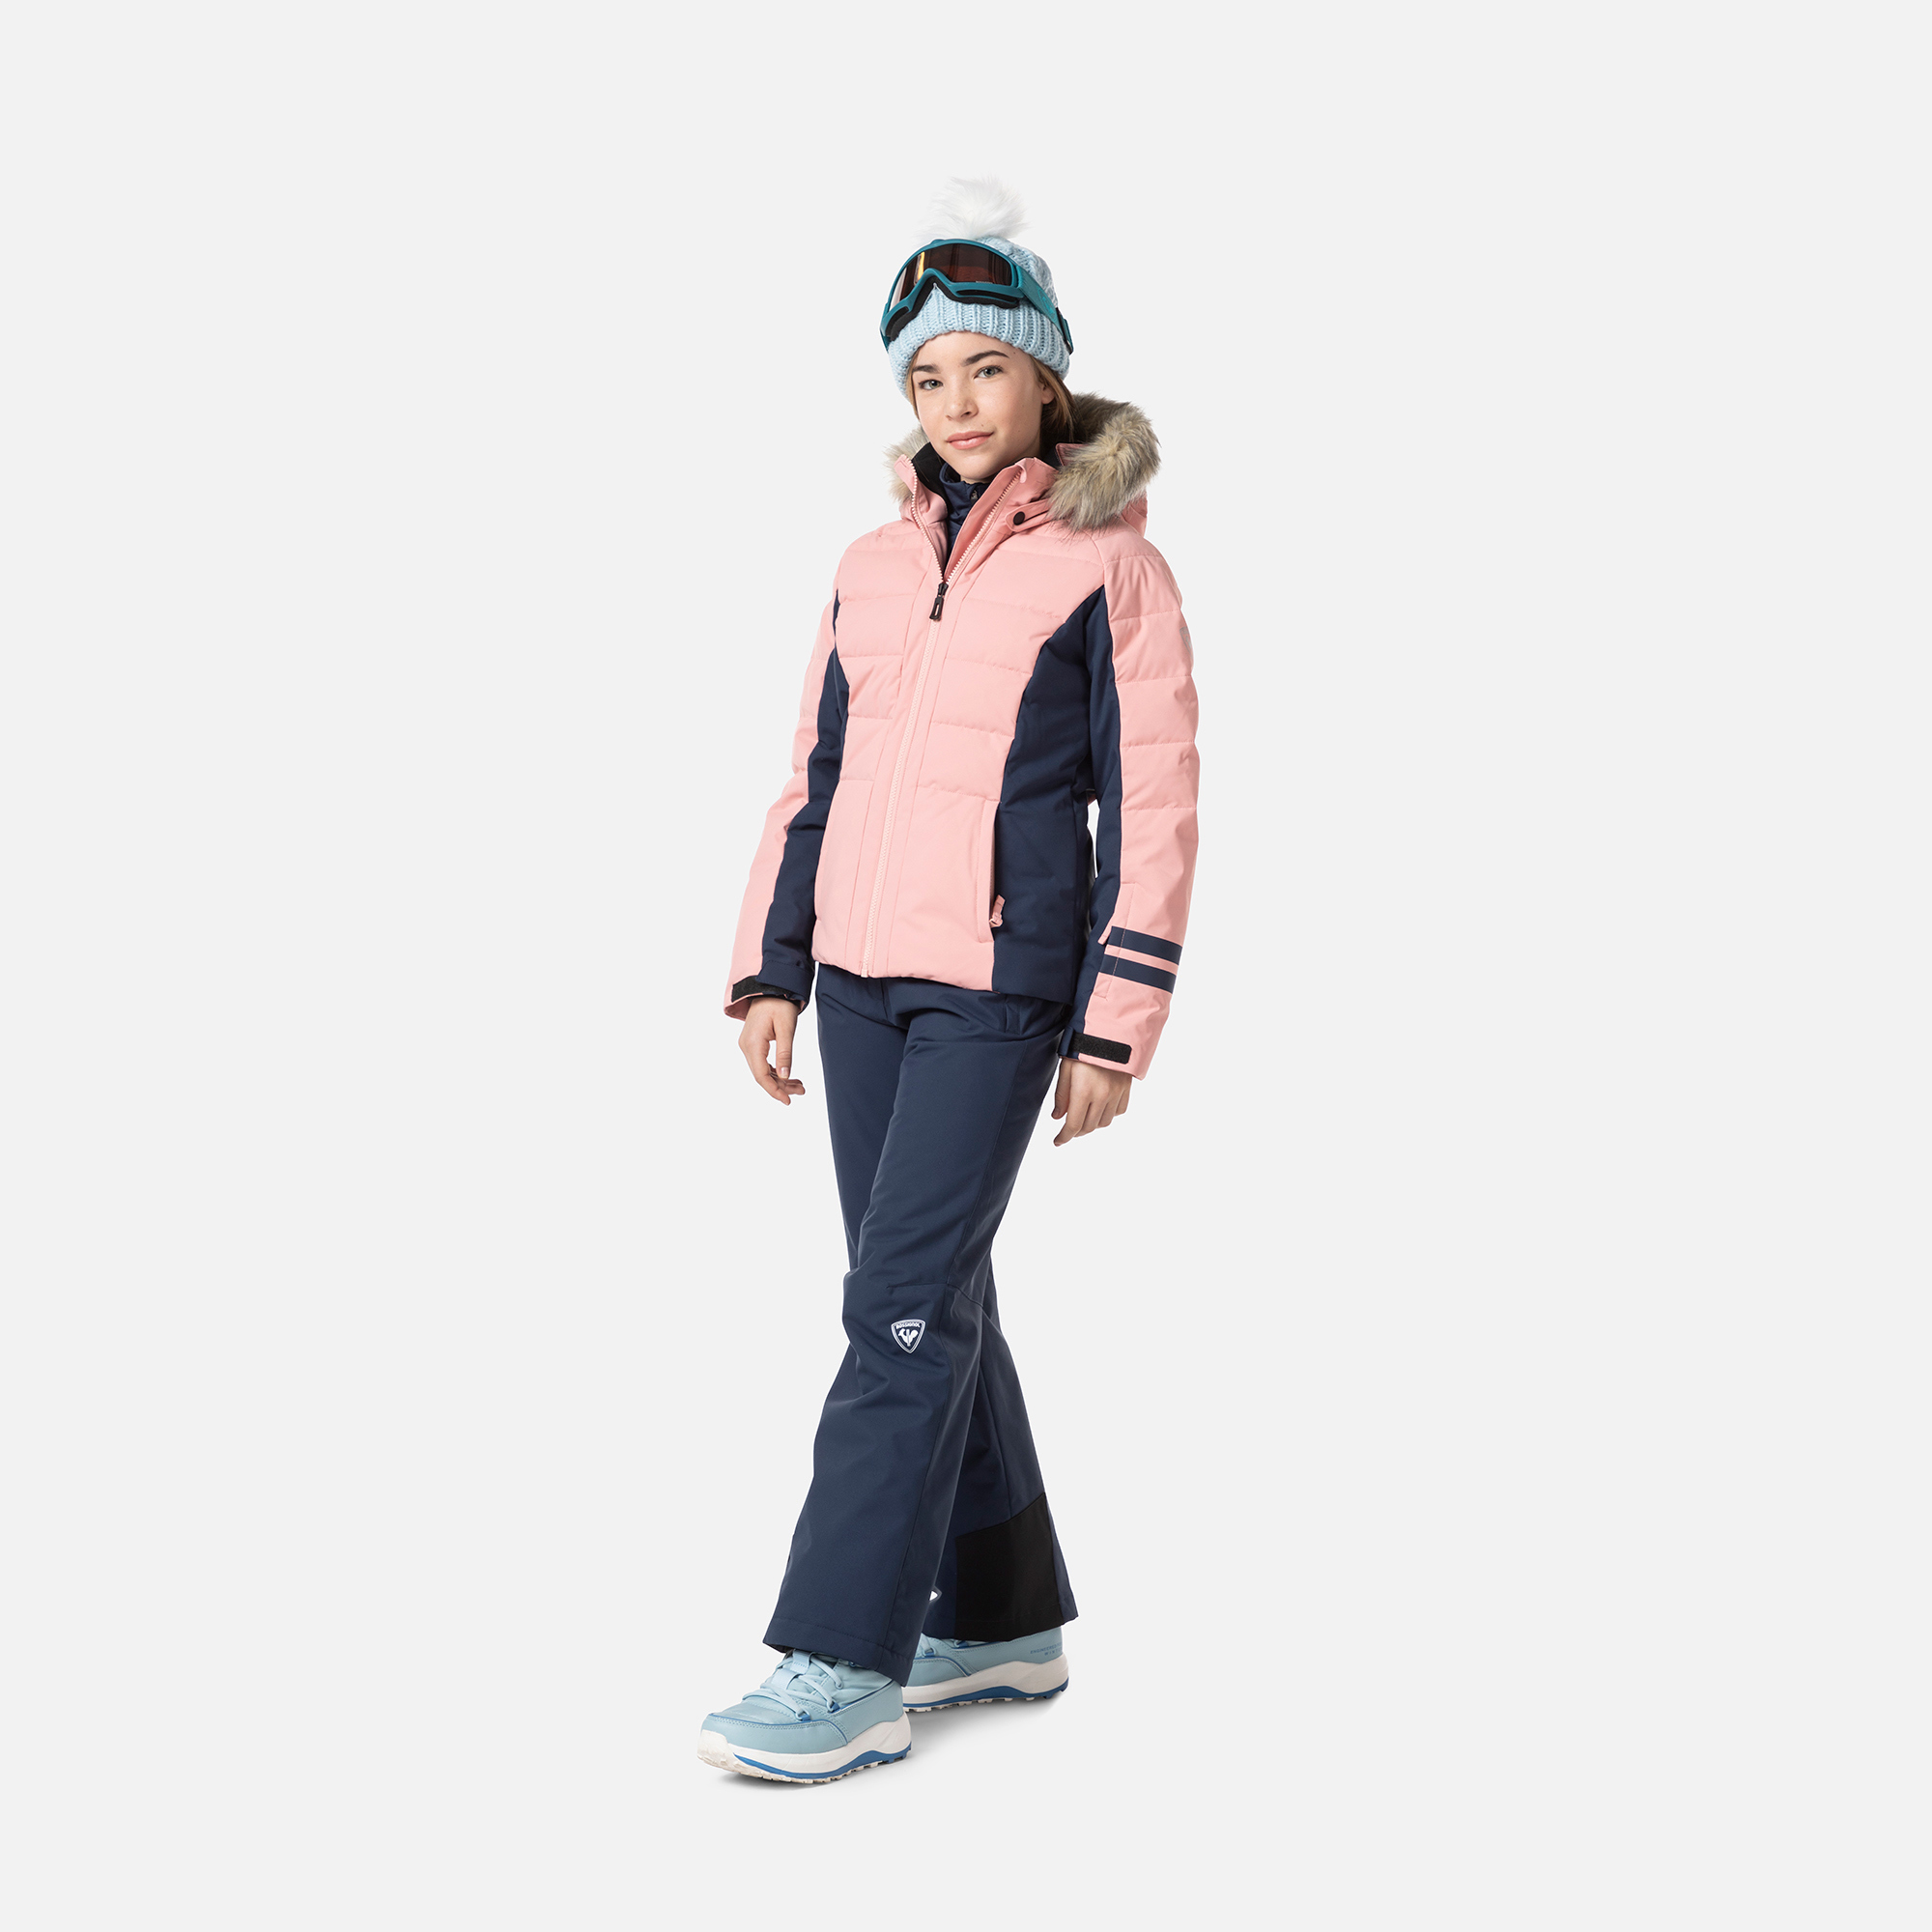 Chaquetas, pantalones y accesorios esquí niñas